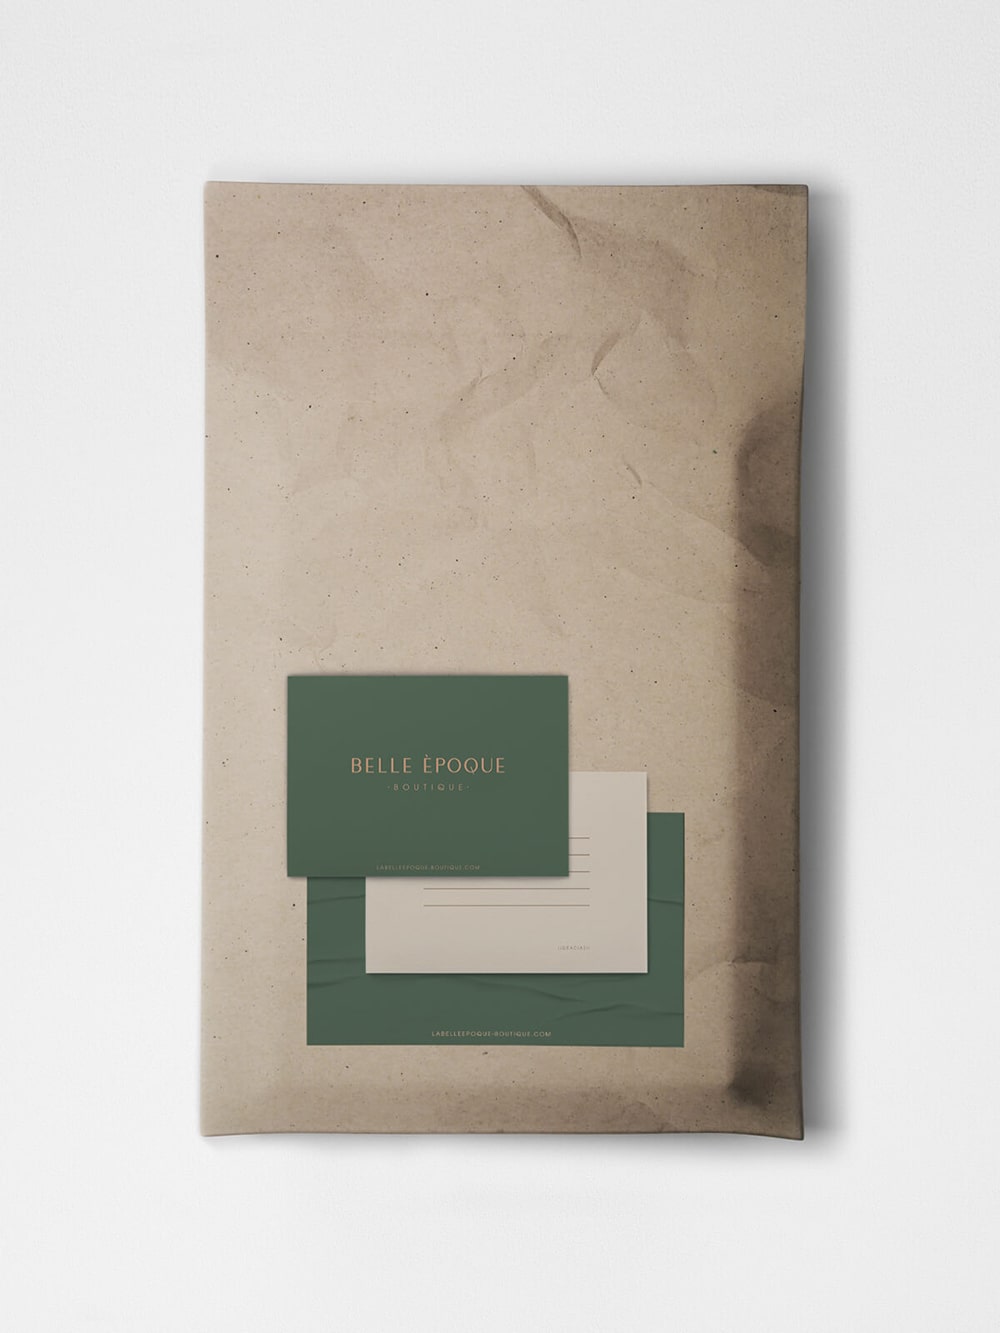 Diseño y desarrollo de identidad visual corporativa para Belle Èpoque. Sobre packaging para envíos.